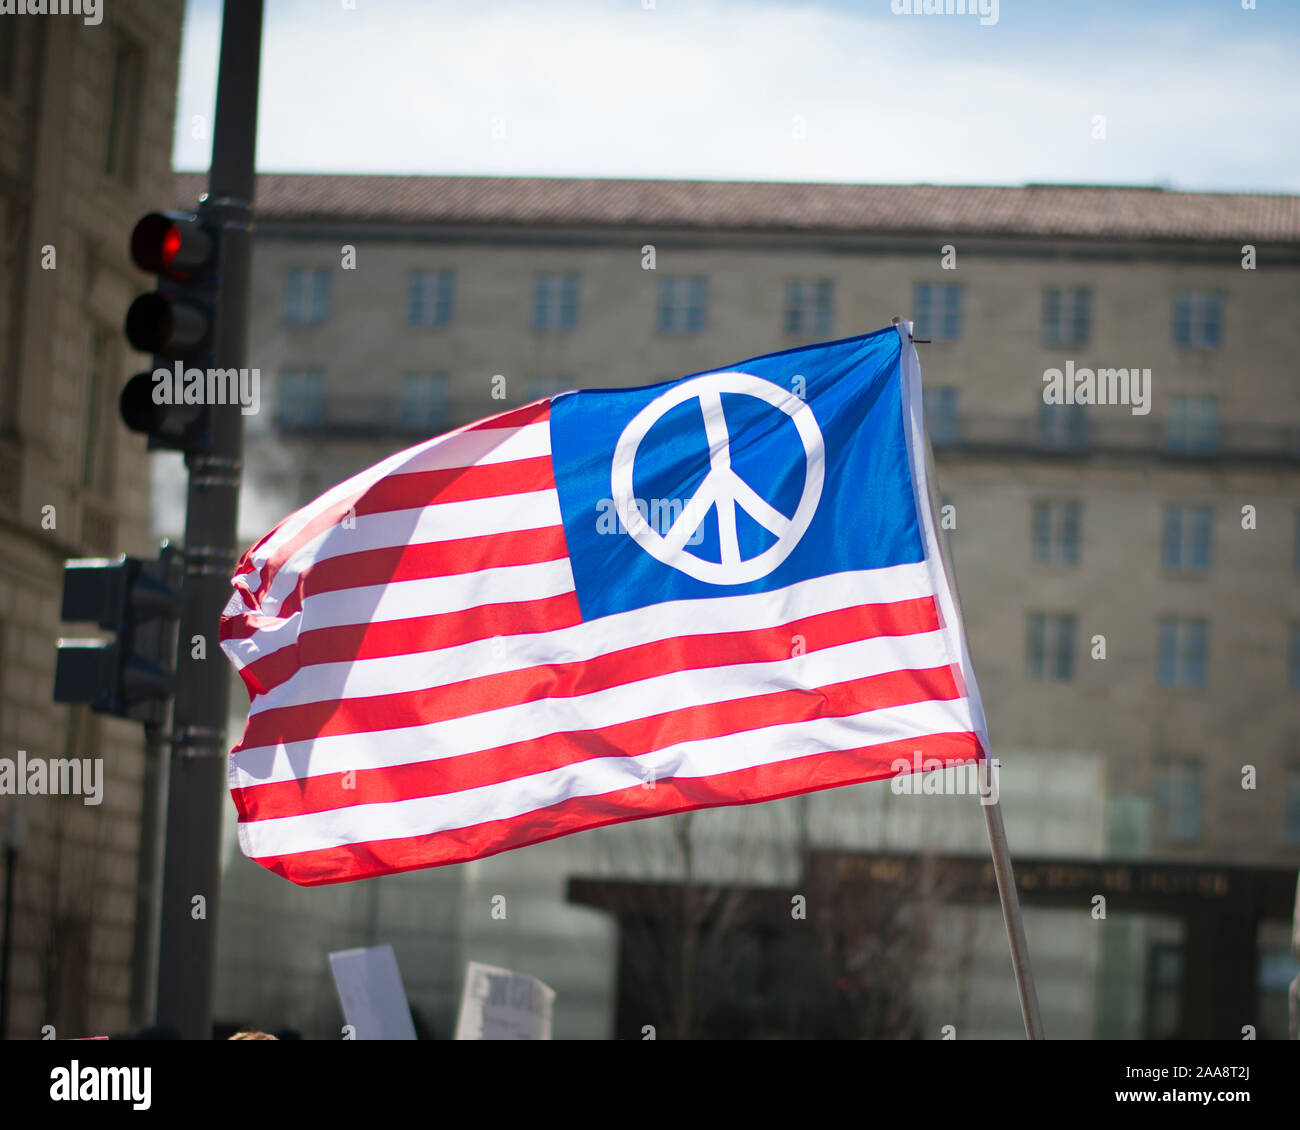 Bandera Americana con el símbolo de la paz en lugar de las estrellas Foto de stock